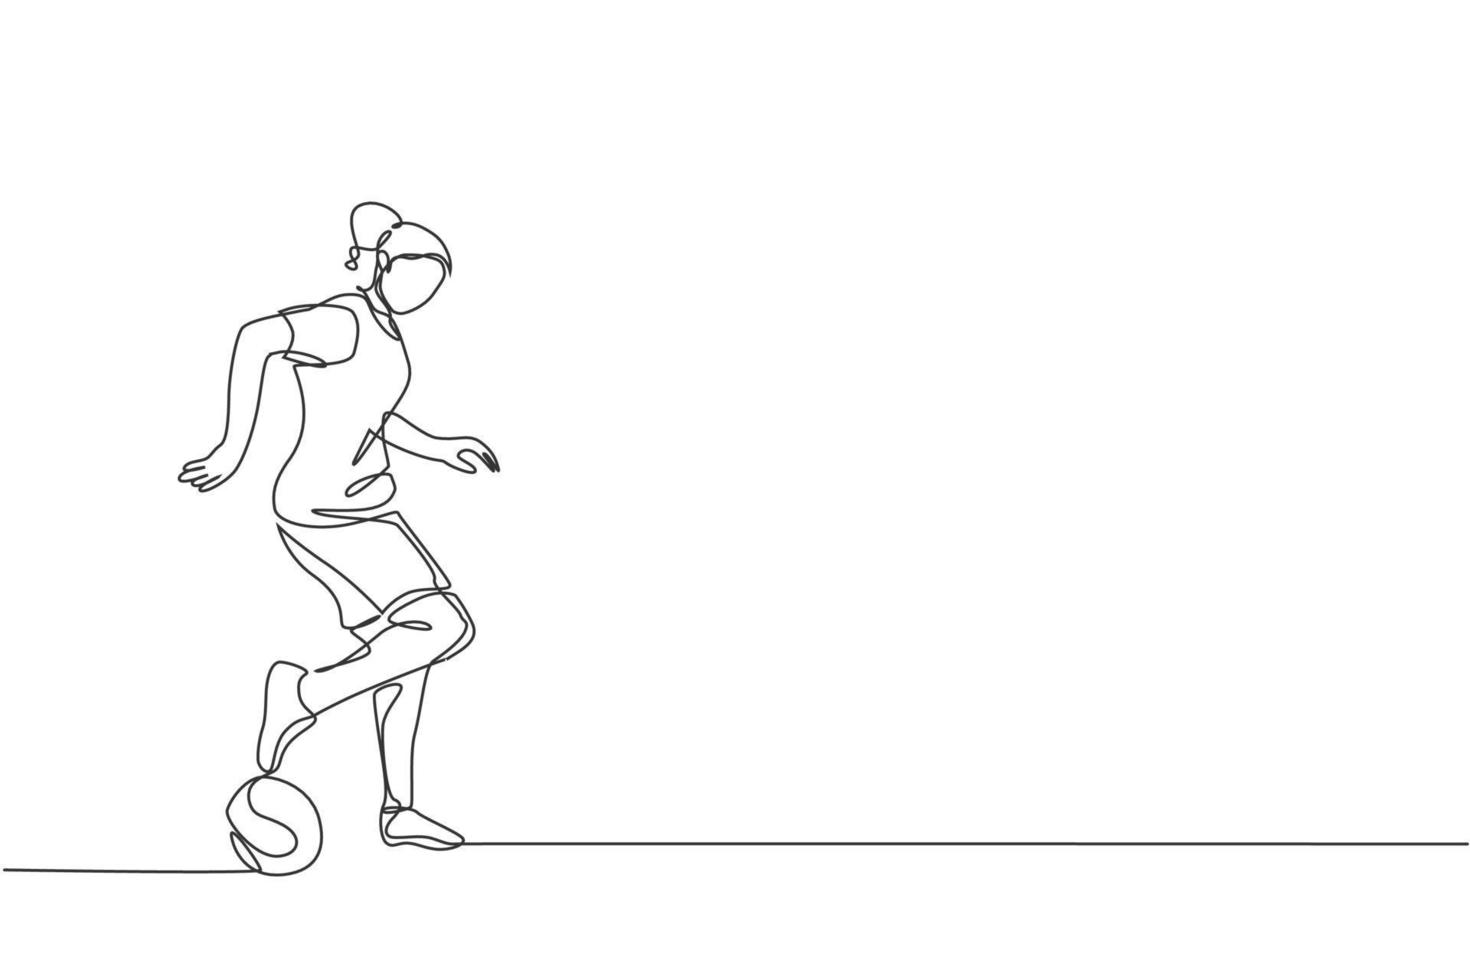 einzelne durchgehende Linienzeichnung einer jungen sportlichen Frau, die Fußball-Freestyle trainiert und Tricks auf dem Feld dribbelt. Fußball-Freestyler-Konzept. trendige grafikdesign-vektorillustration mit einer linie zeichnen vektor